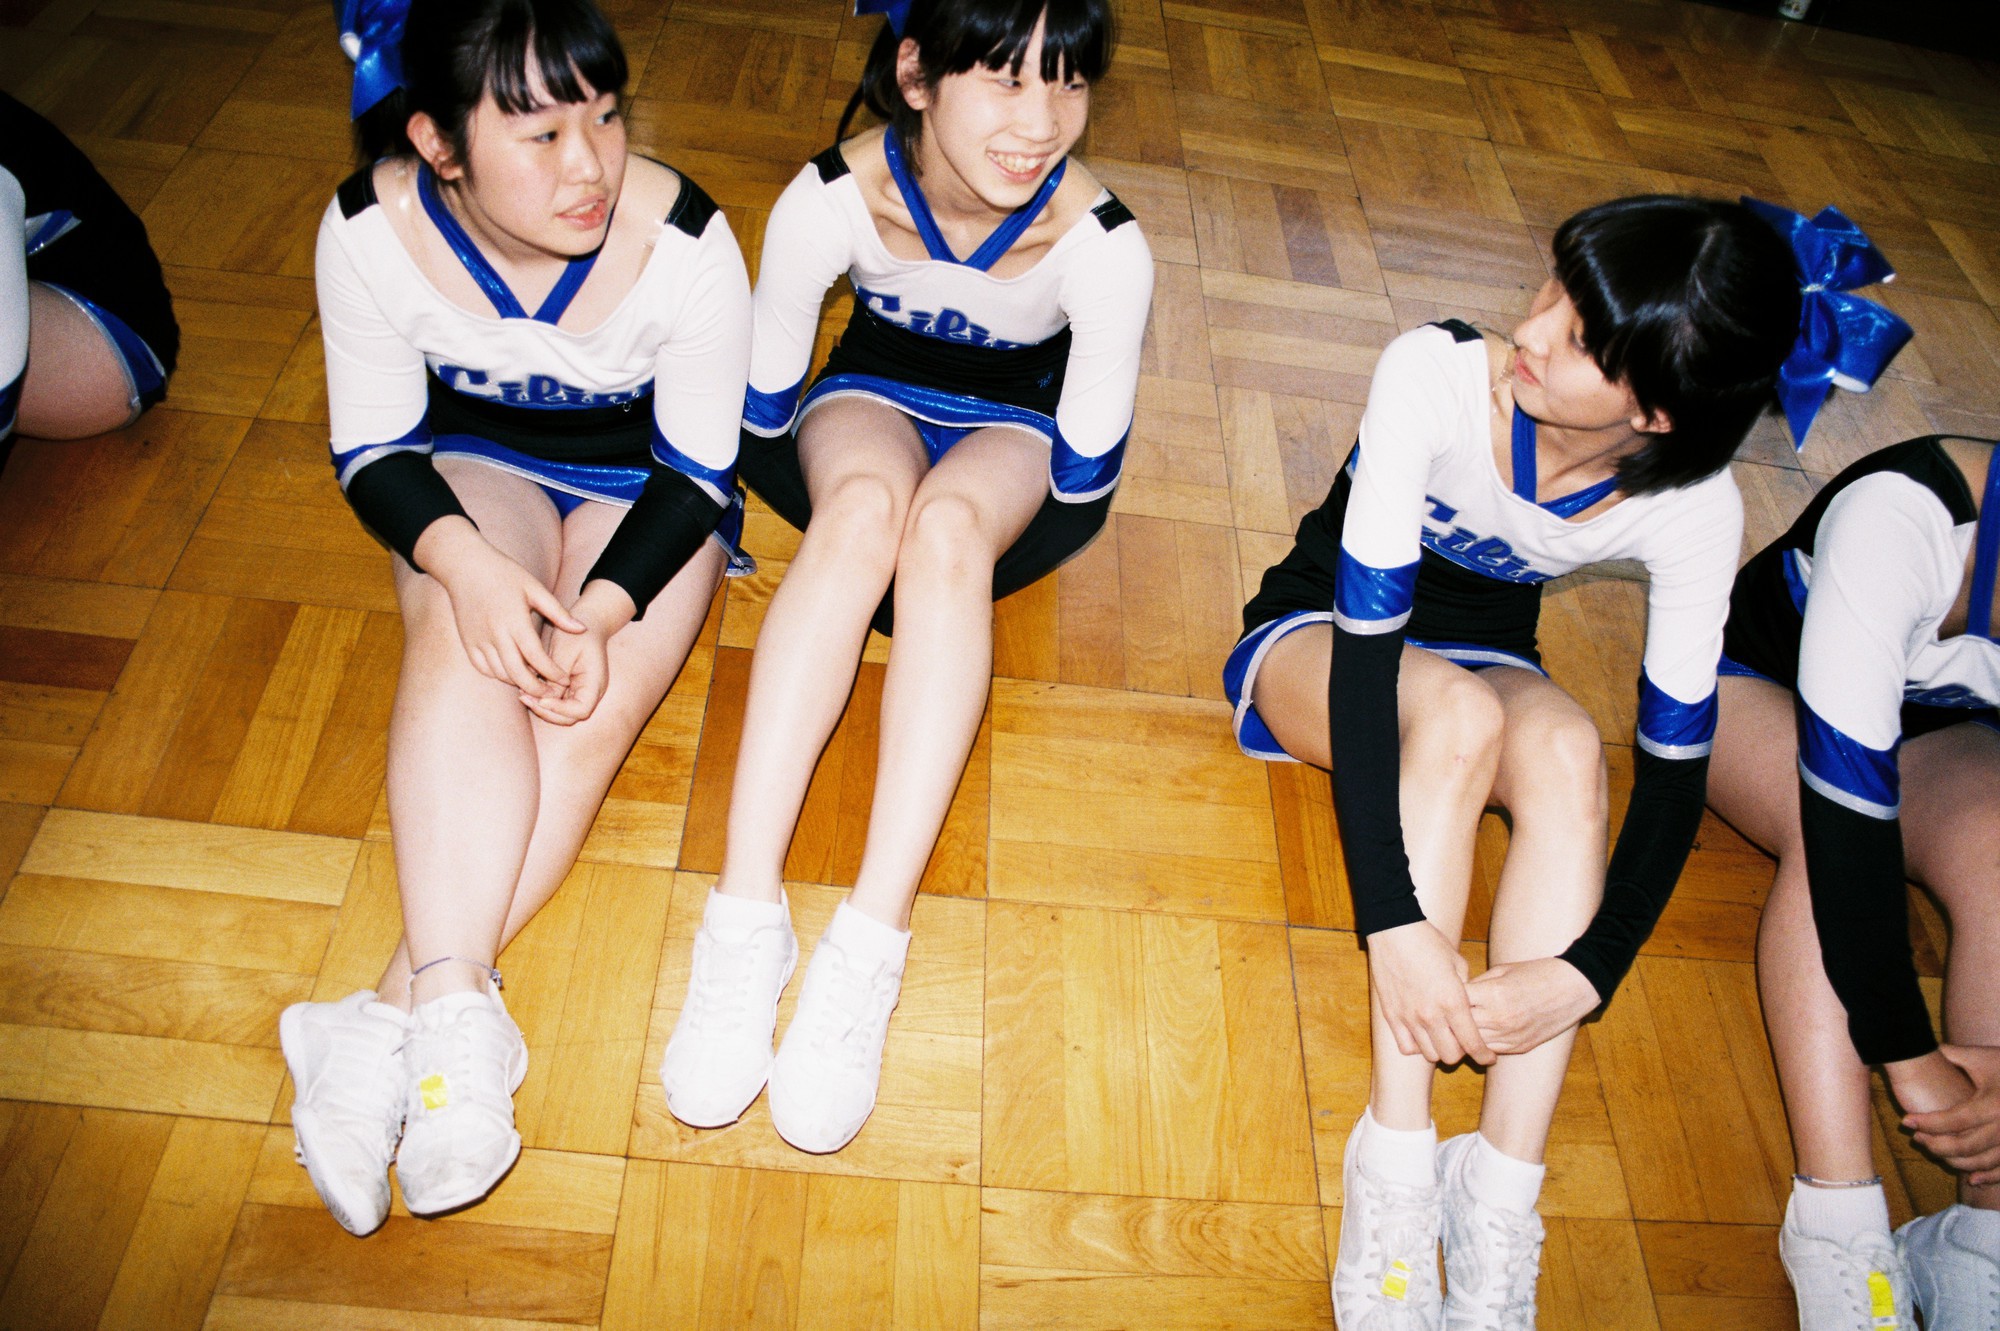 Hình nền Nền Nữ Sinh Nhật Bản Băng Qua đường Với đồng Phục Màu Xanh Nền  Bốn Học Sinh Tiểu Học Băng Qua đường Dành Cho Người đi Bộ ảnh Chụp ảnh